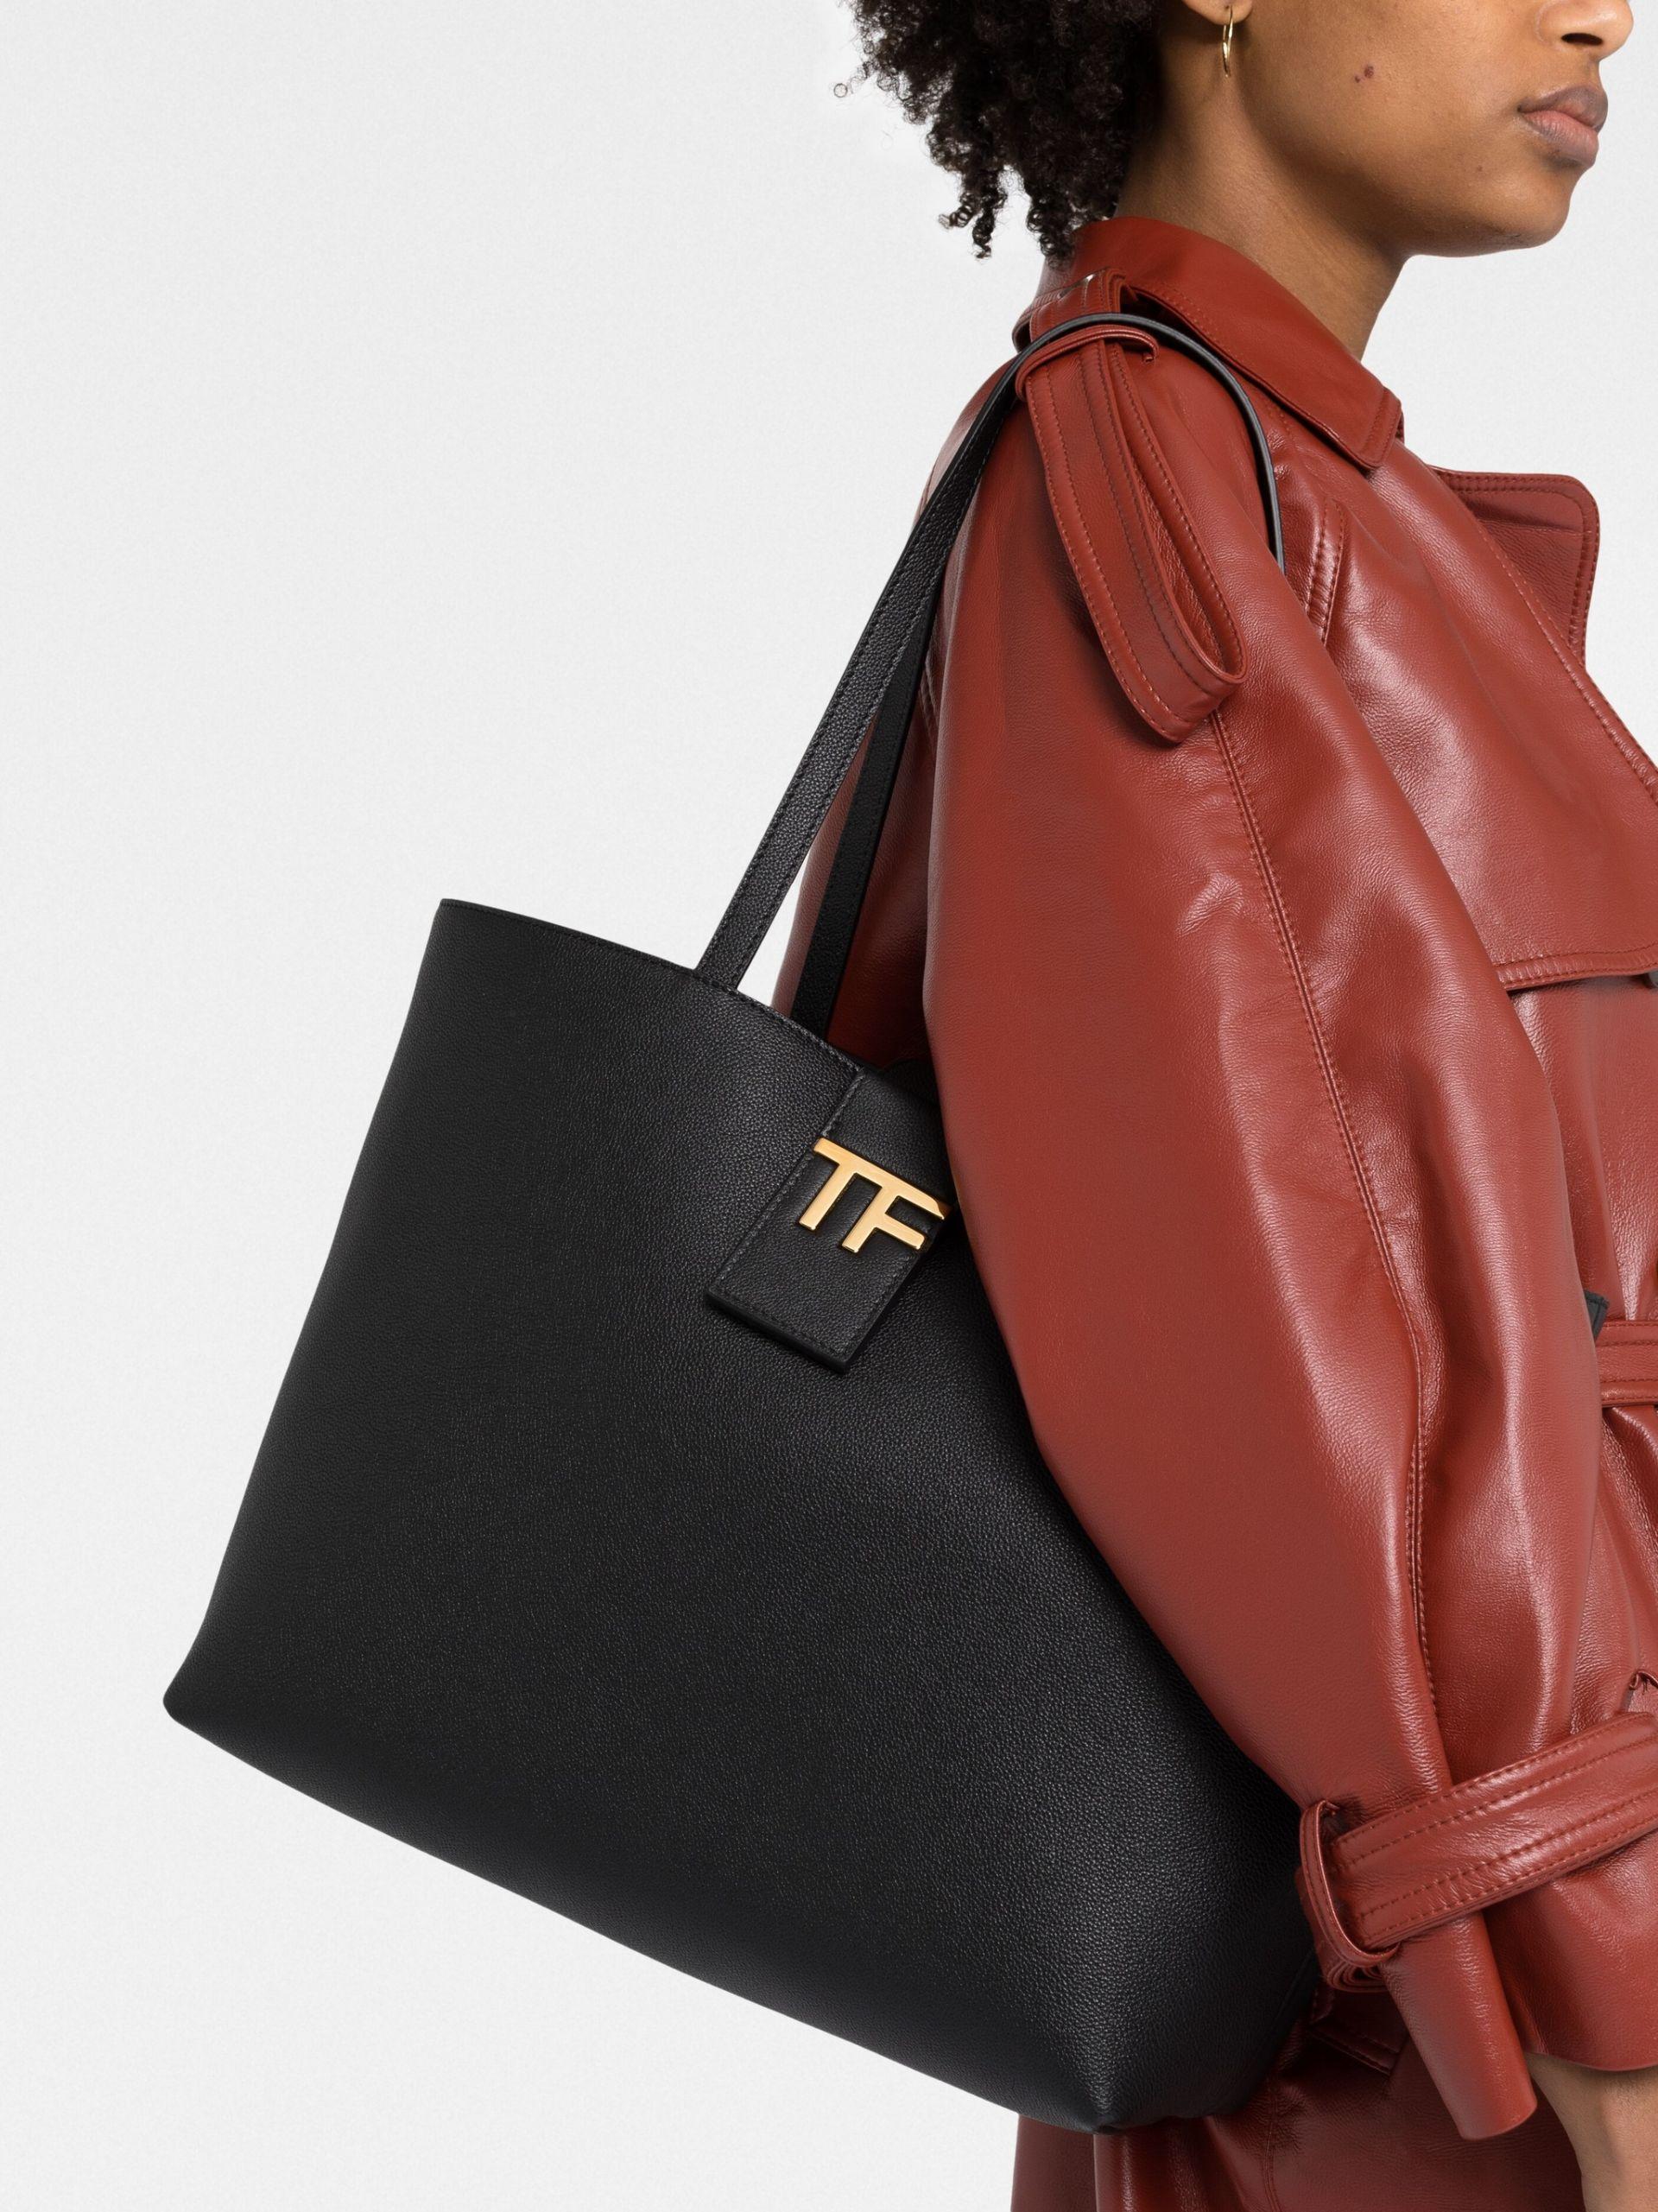 TOM FORD Jennifer Medium Grained Leather Shoulder Bag - Bergdorf Goodman